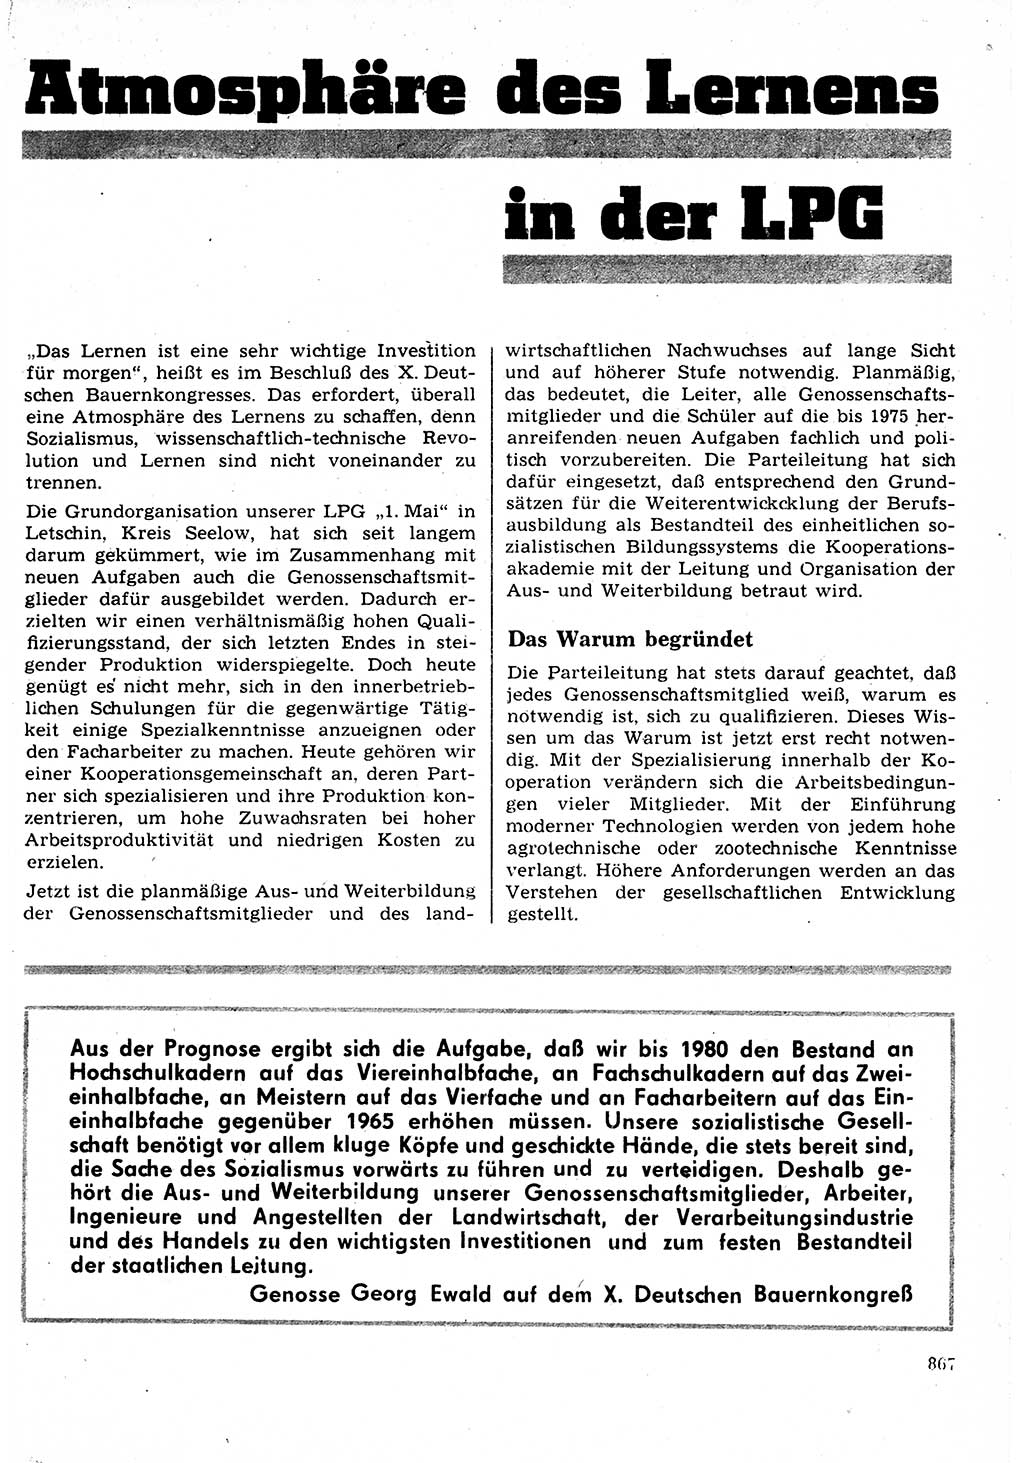 Neuer Weg (NW), Organ des Zentralkomitees (ZK) der SED (Sozialistische Einheitspartei Deutschlands) für Fragen des Parteilebens, 23. Jahrgang [Deutsche Demokratische Republik (DDR)] 1968, Seite 851 (NW ZK SED DDR 1968, S. 851)